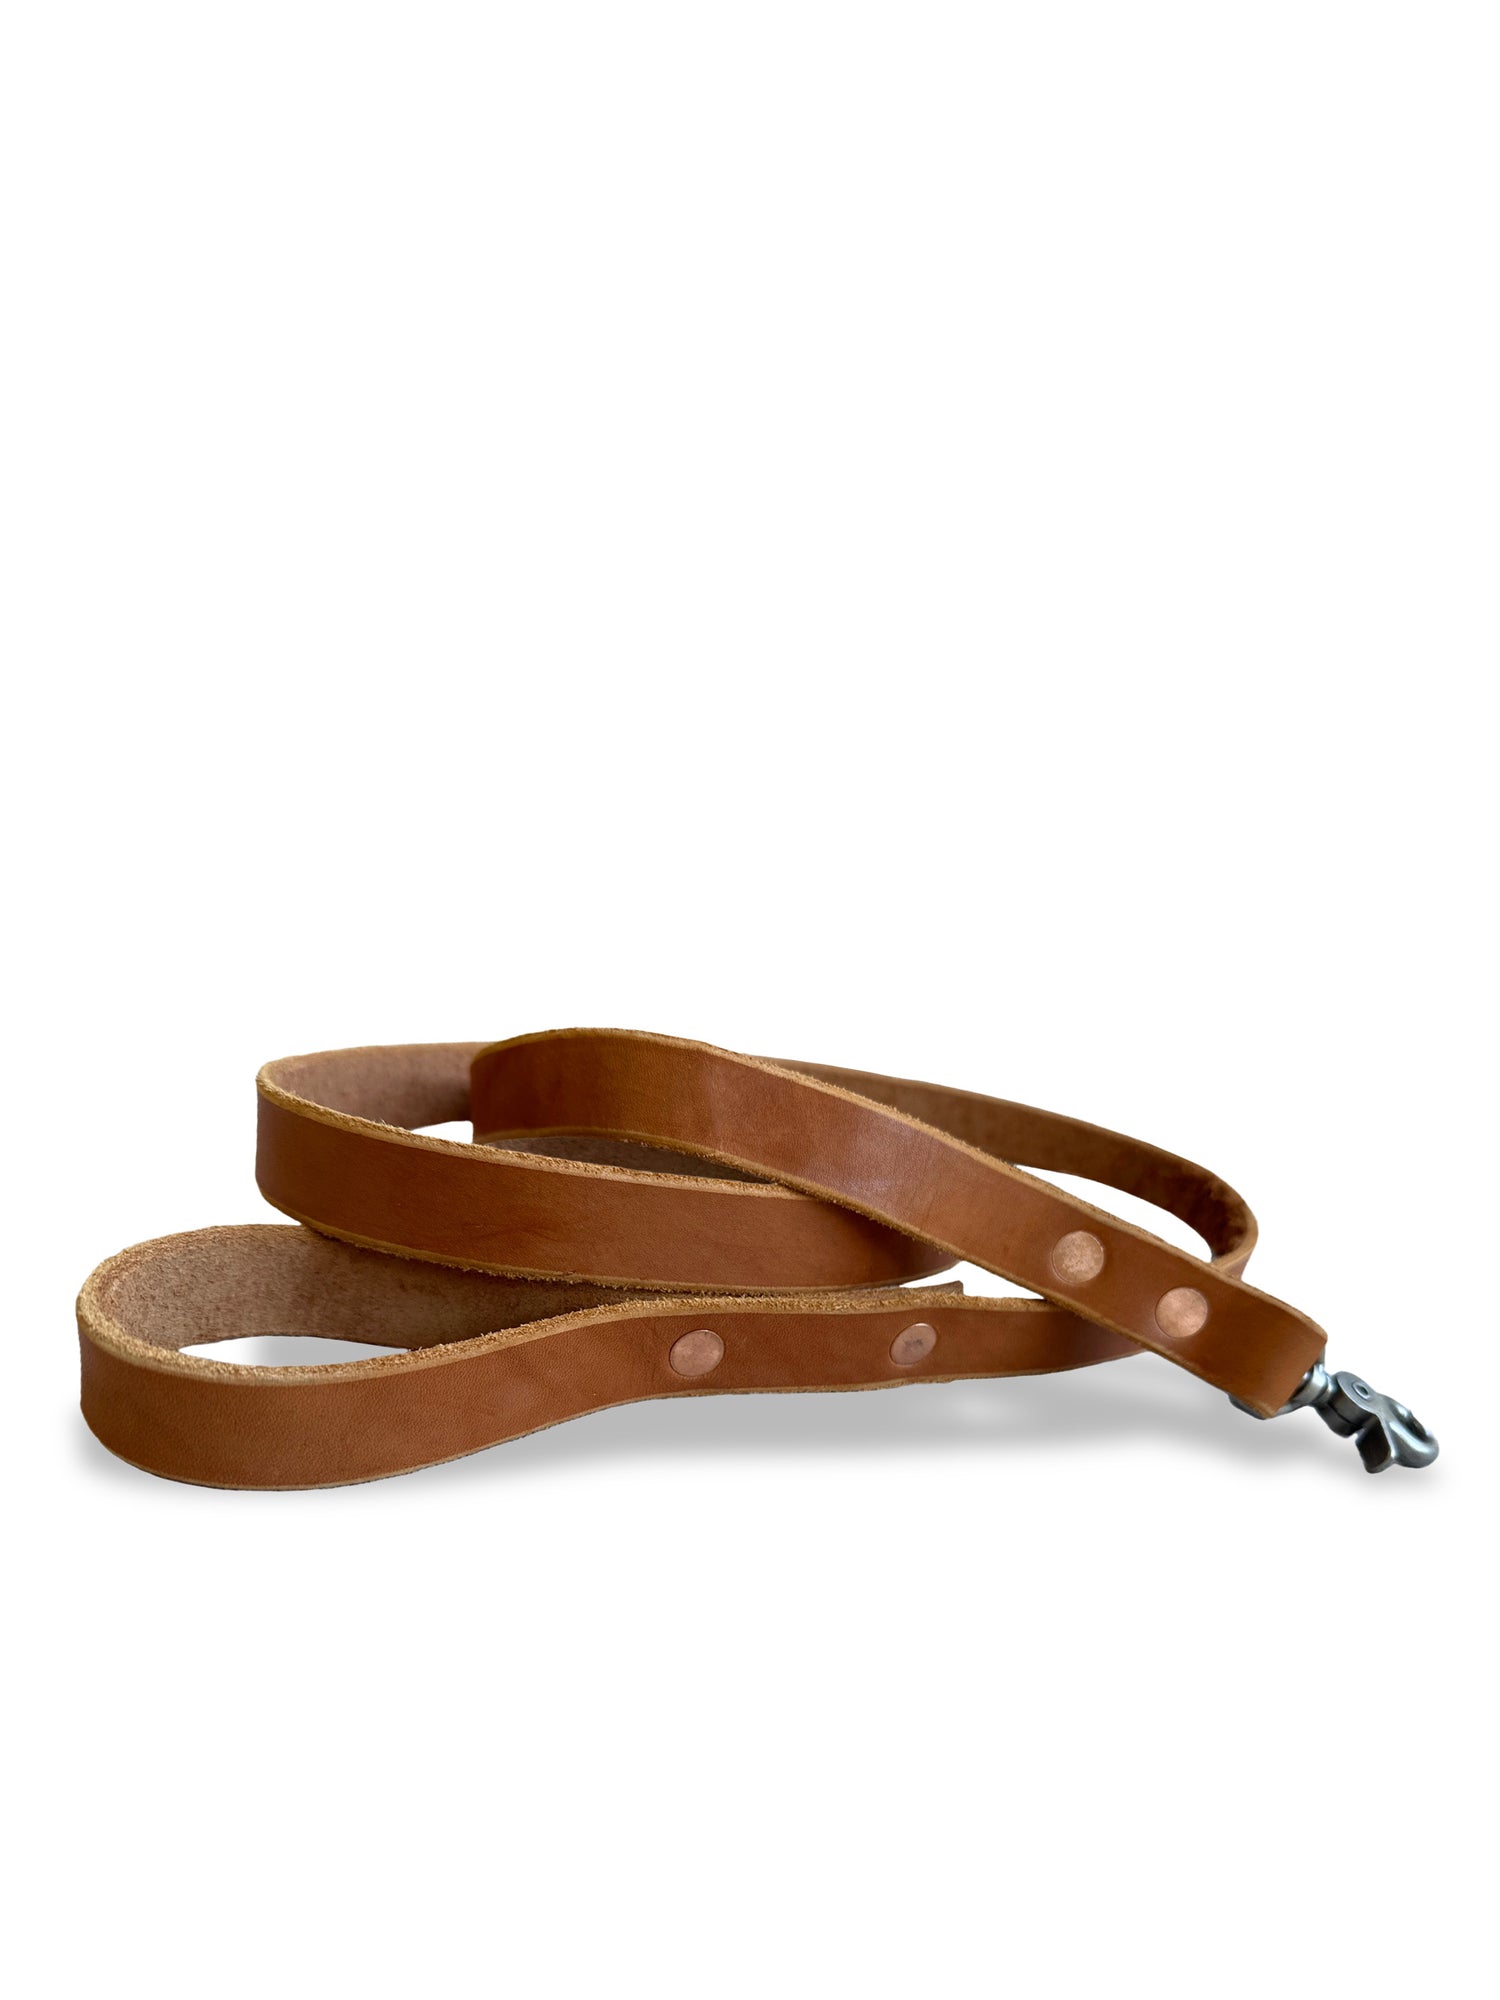 English Bridle Leather Dog Leash